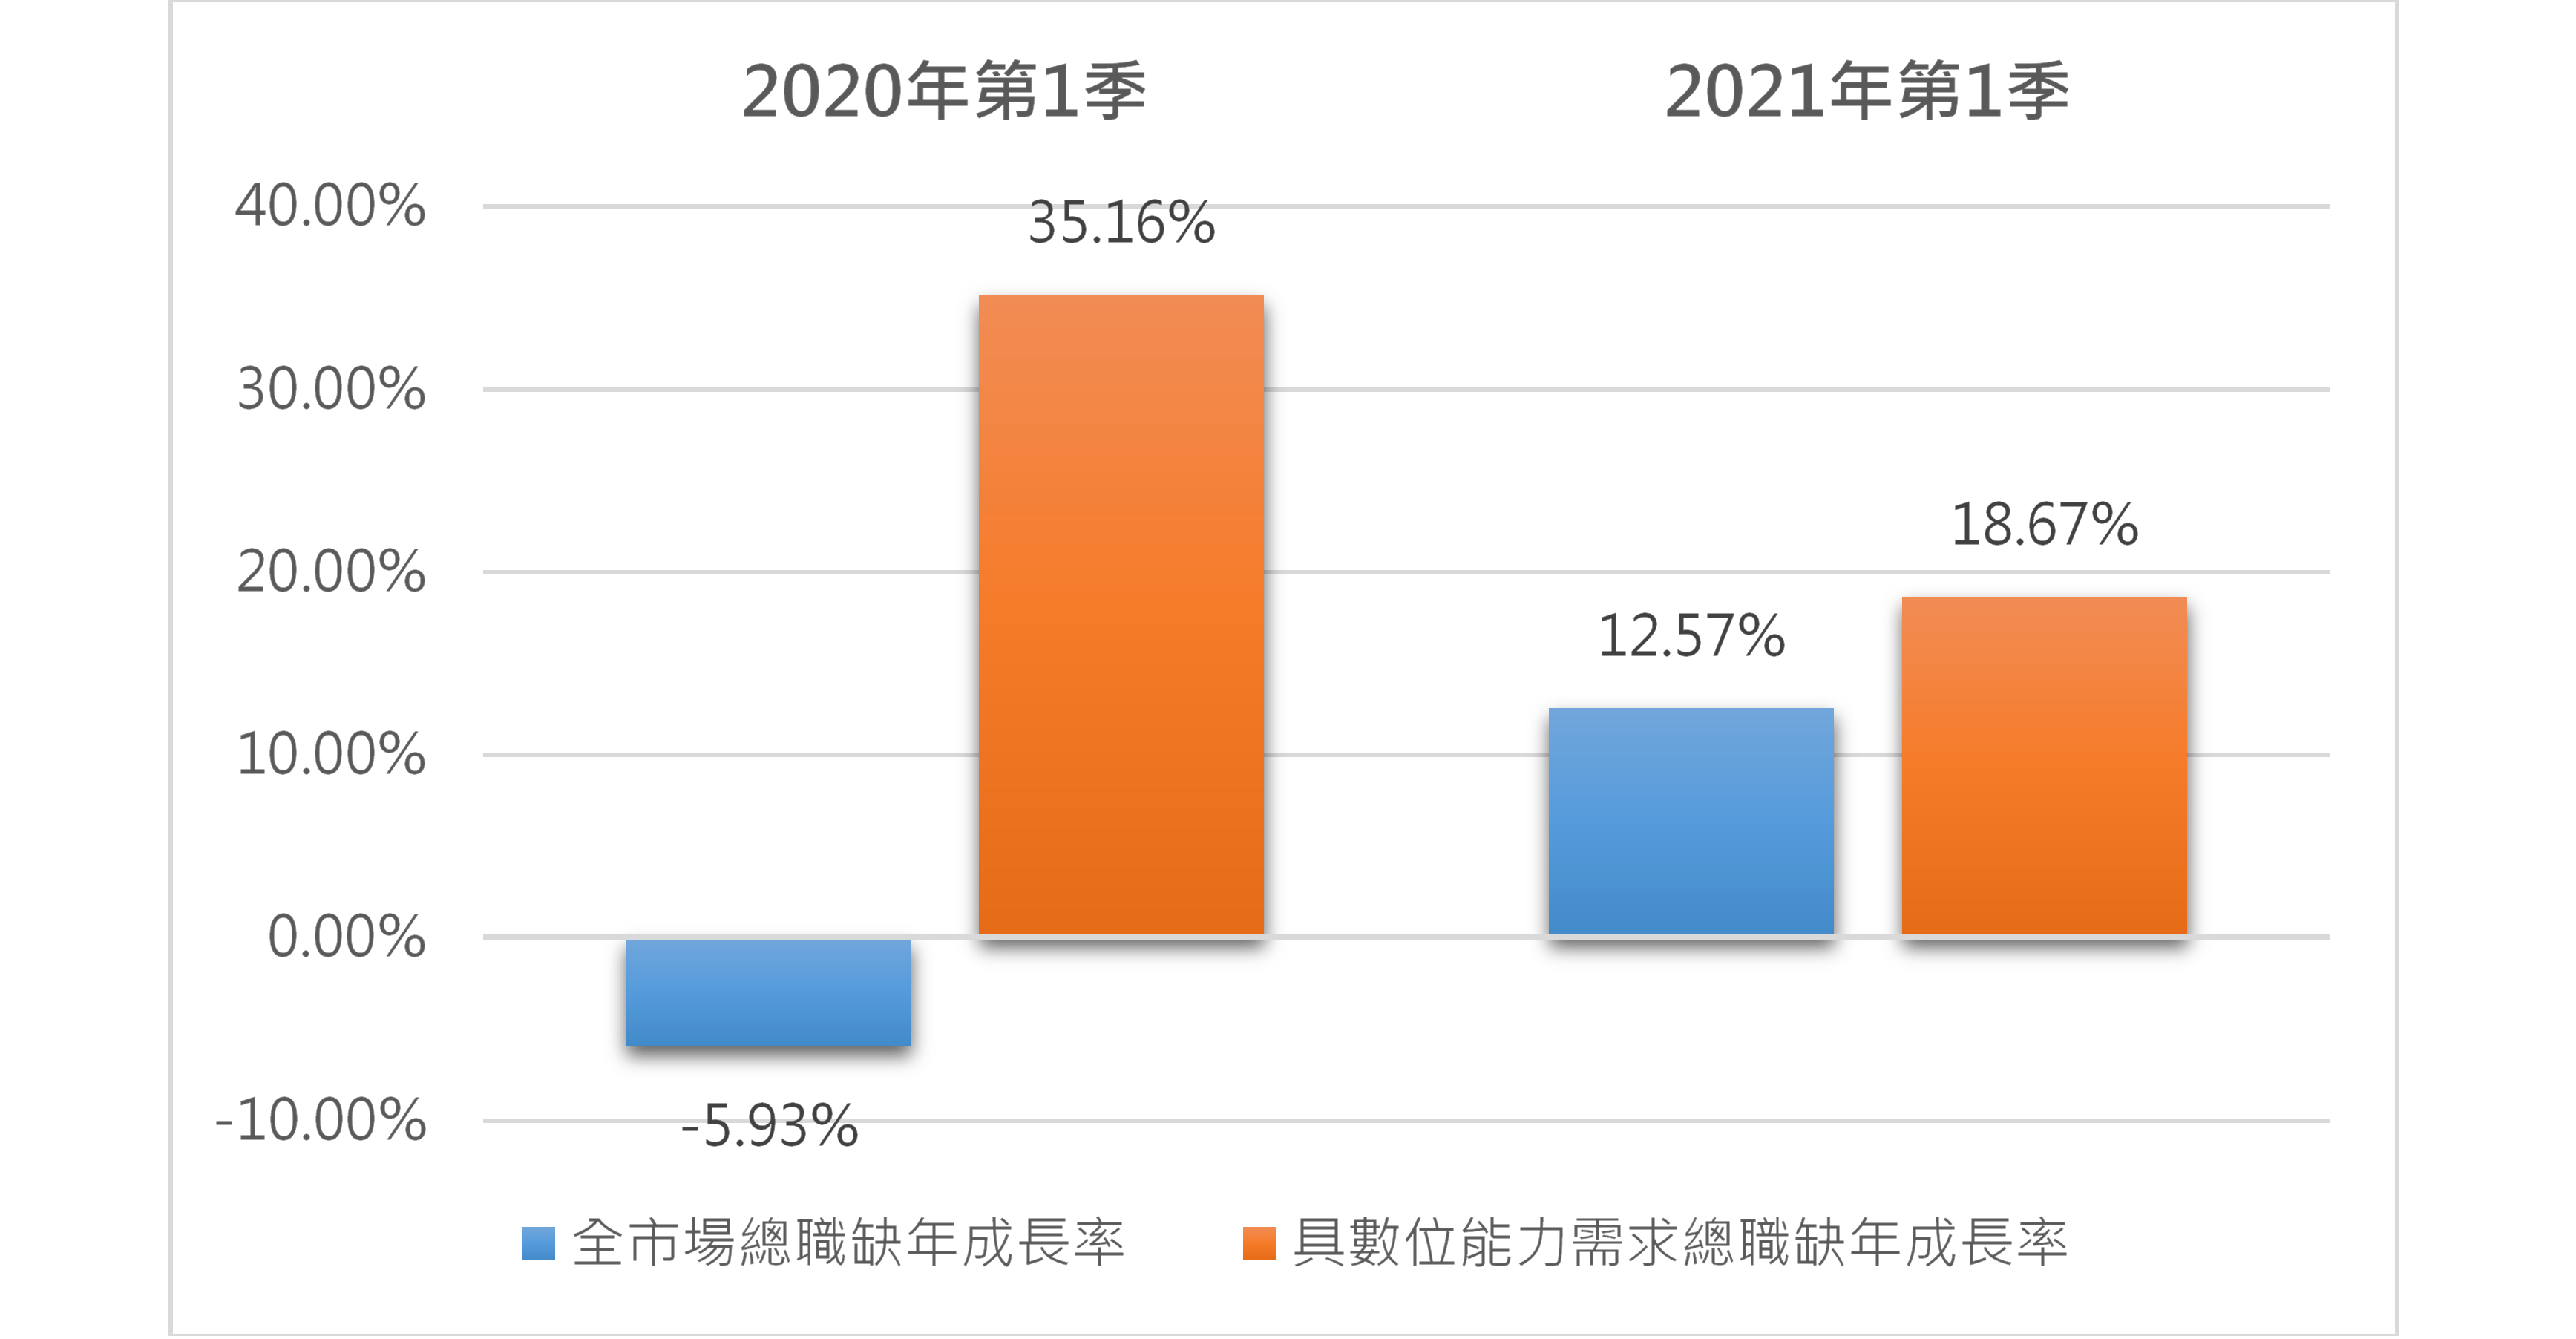 2020年第1季整體職缺數年減5.93%，而數位技術相關職缺數成長35.16%，2021年第1季成長率亦高於整體。